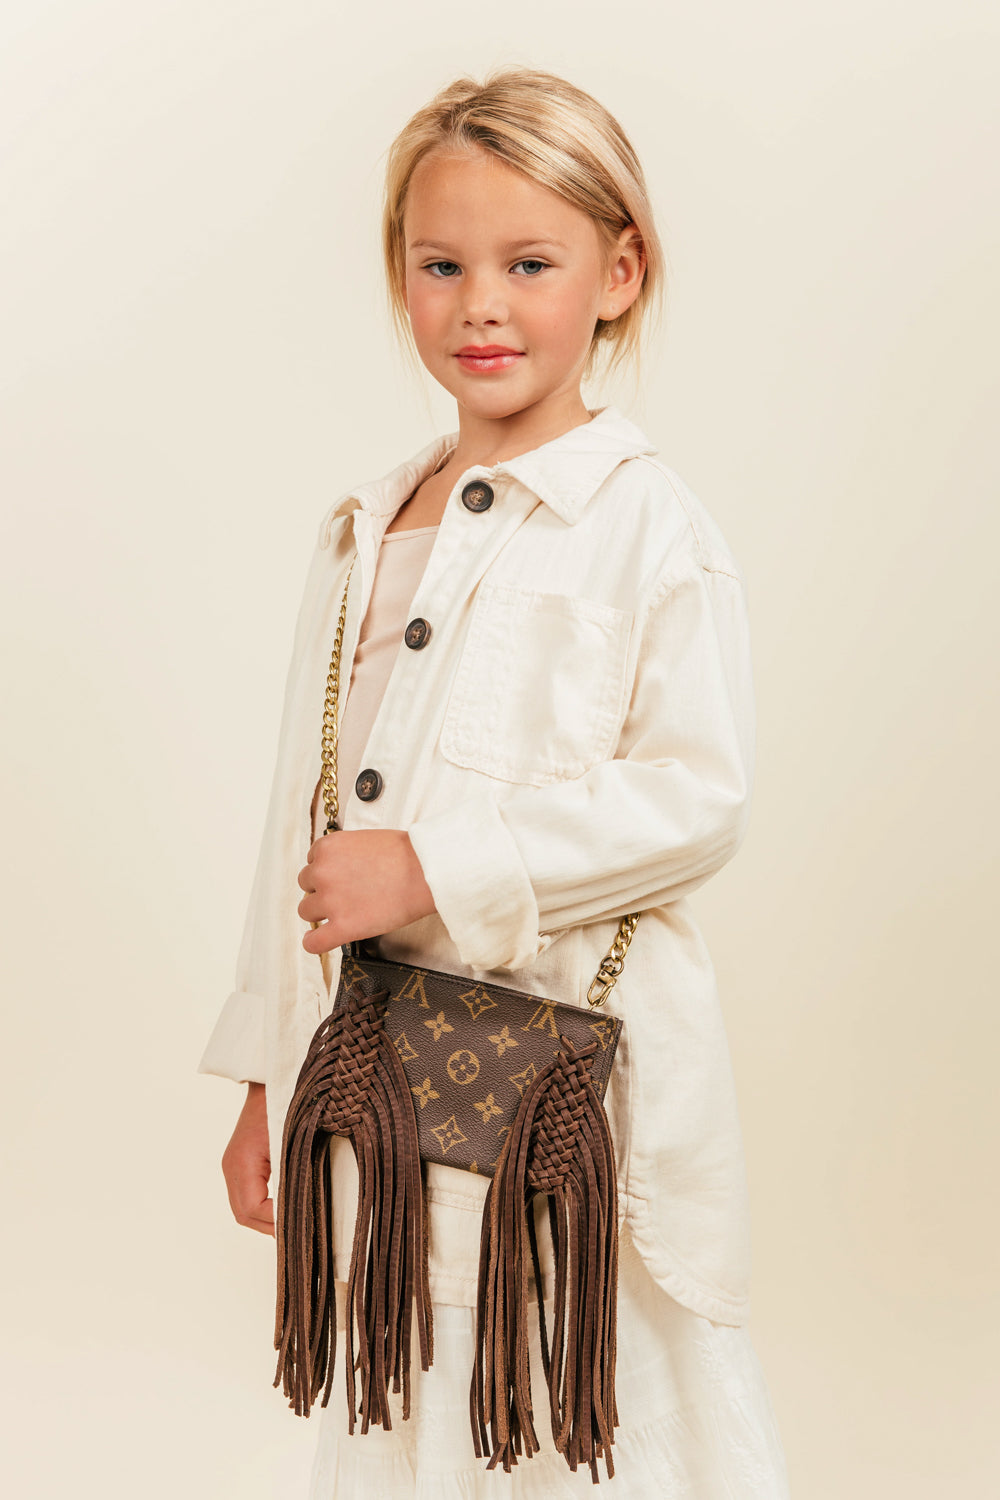 For Kids – Vintage Boho Bags